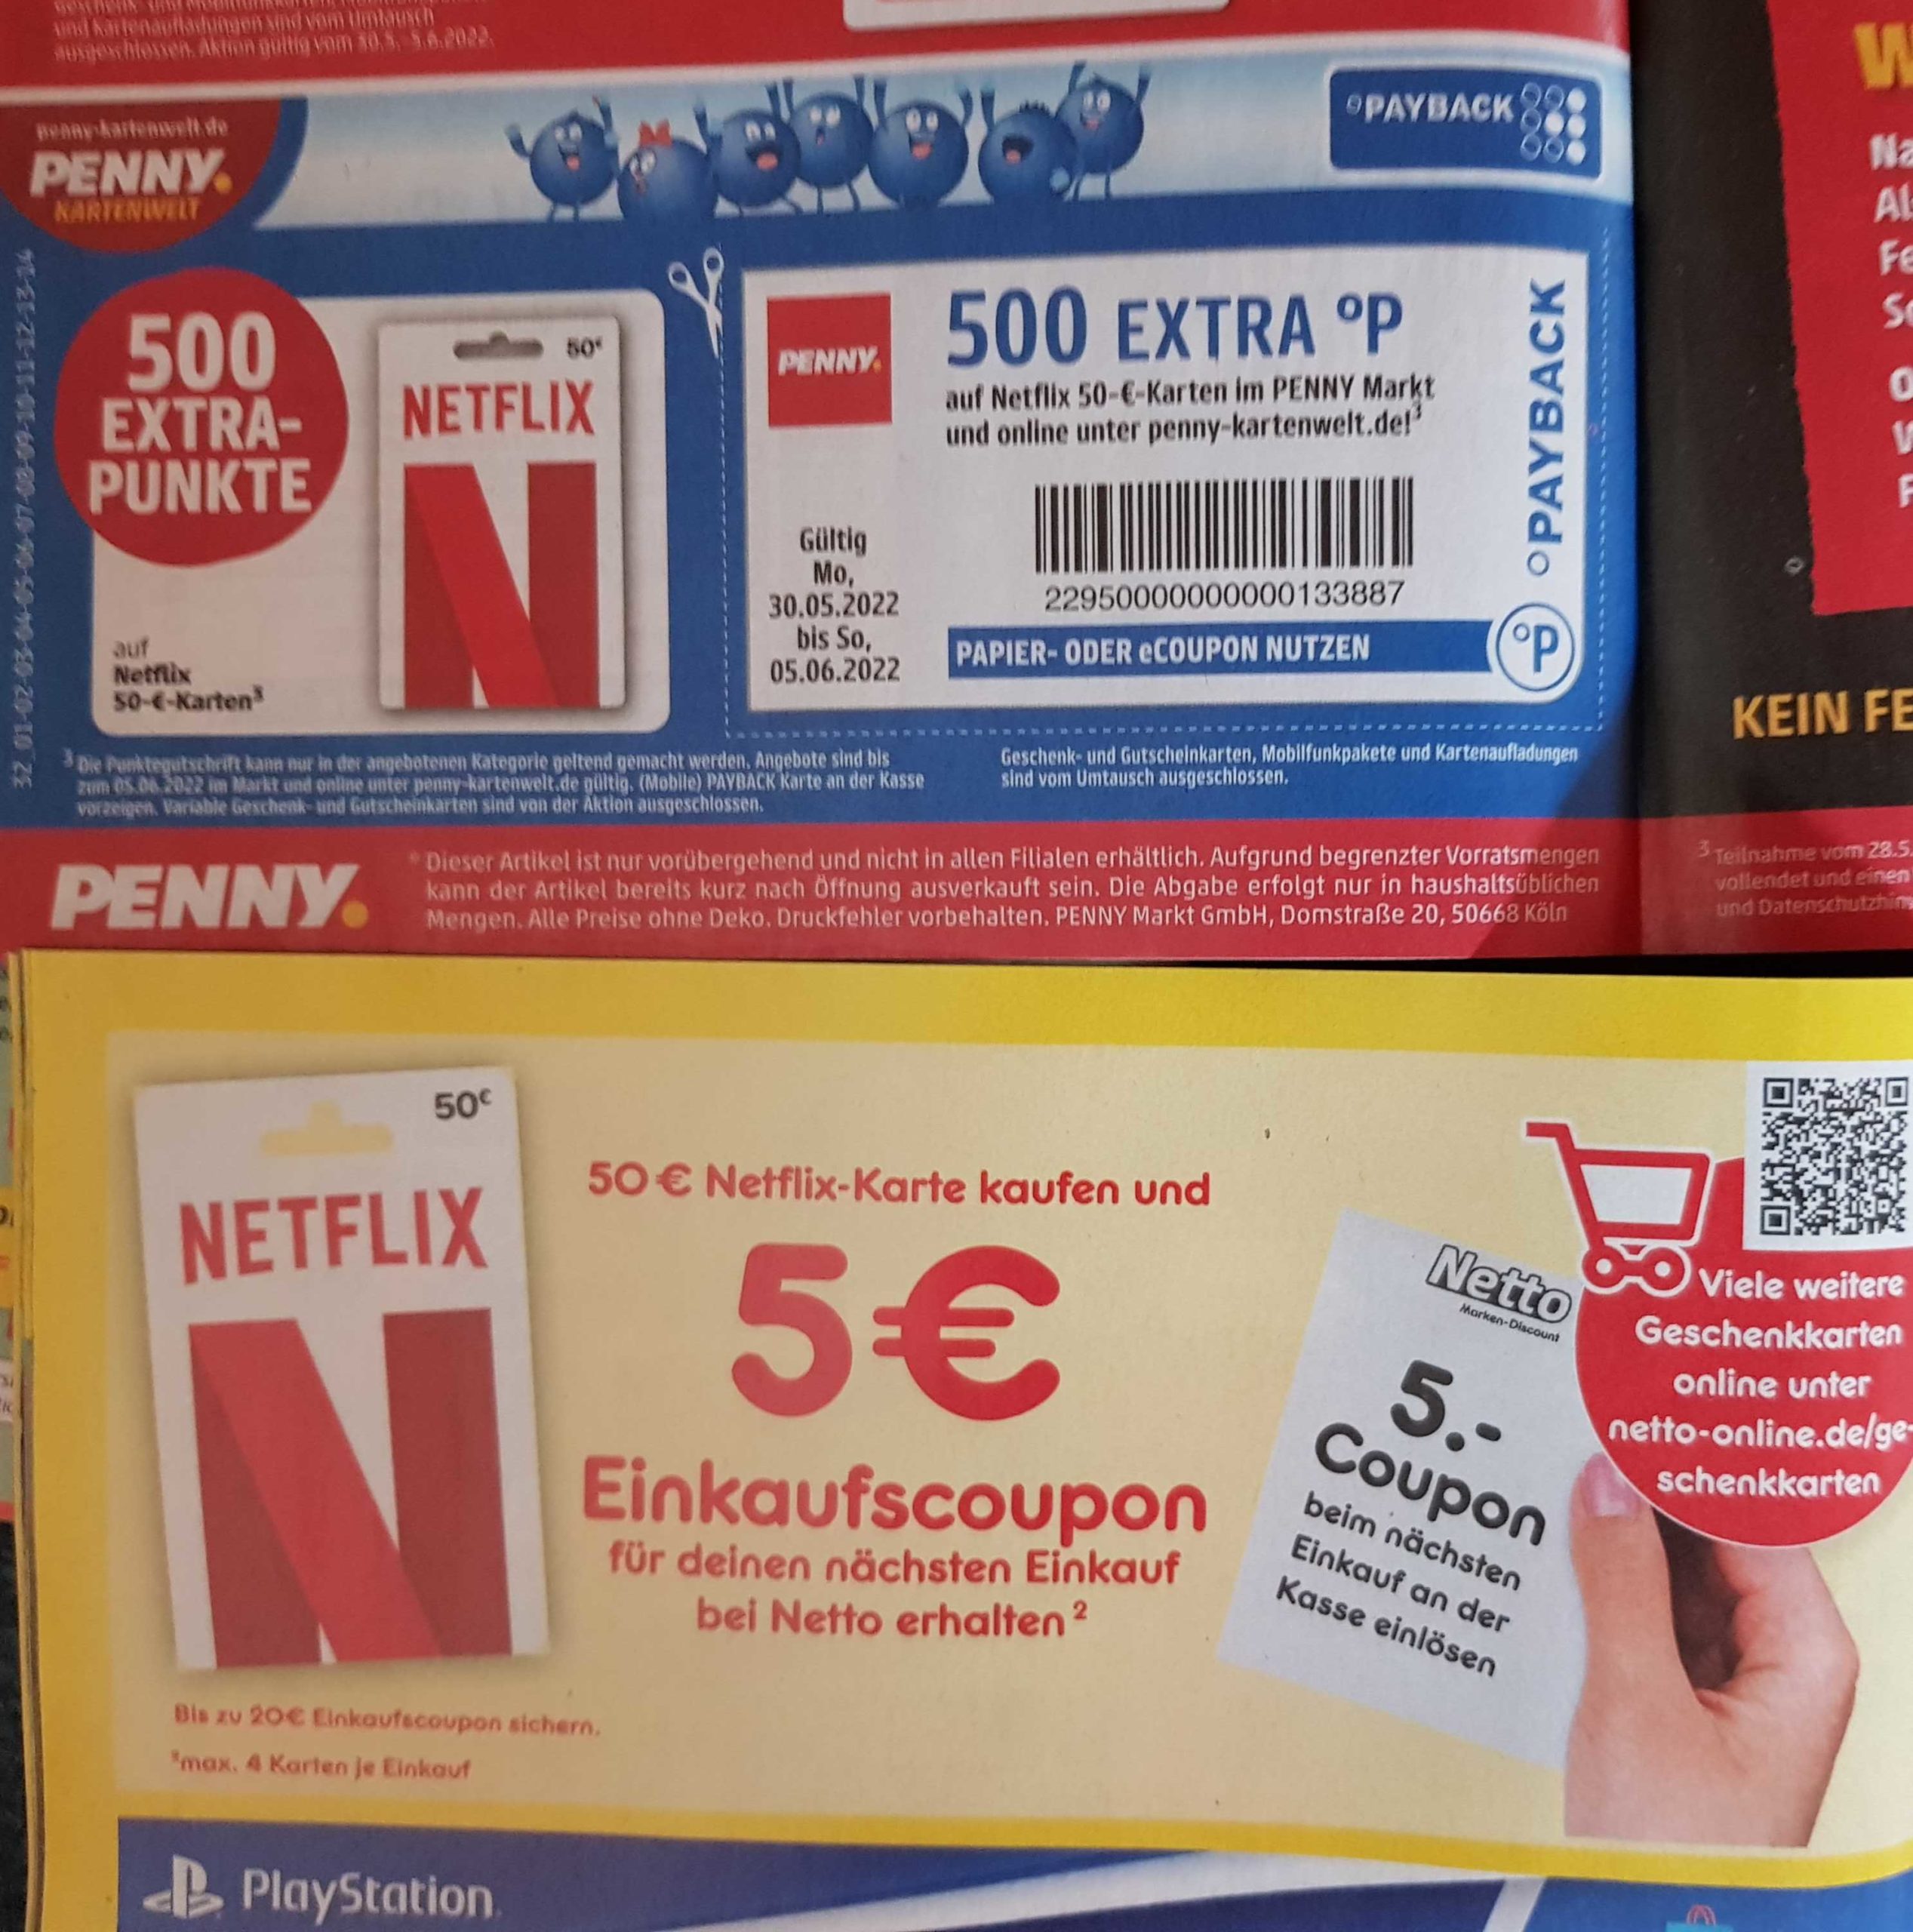 10% bei *Netflix* 50€ Guthabenkarten sparen bei Netto und Penny